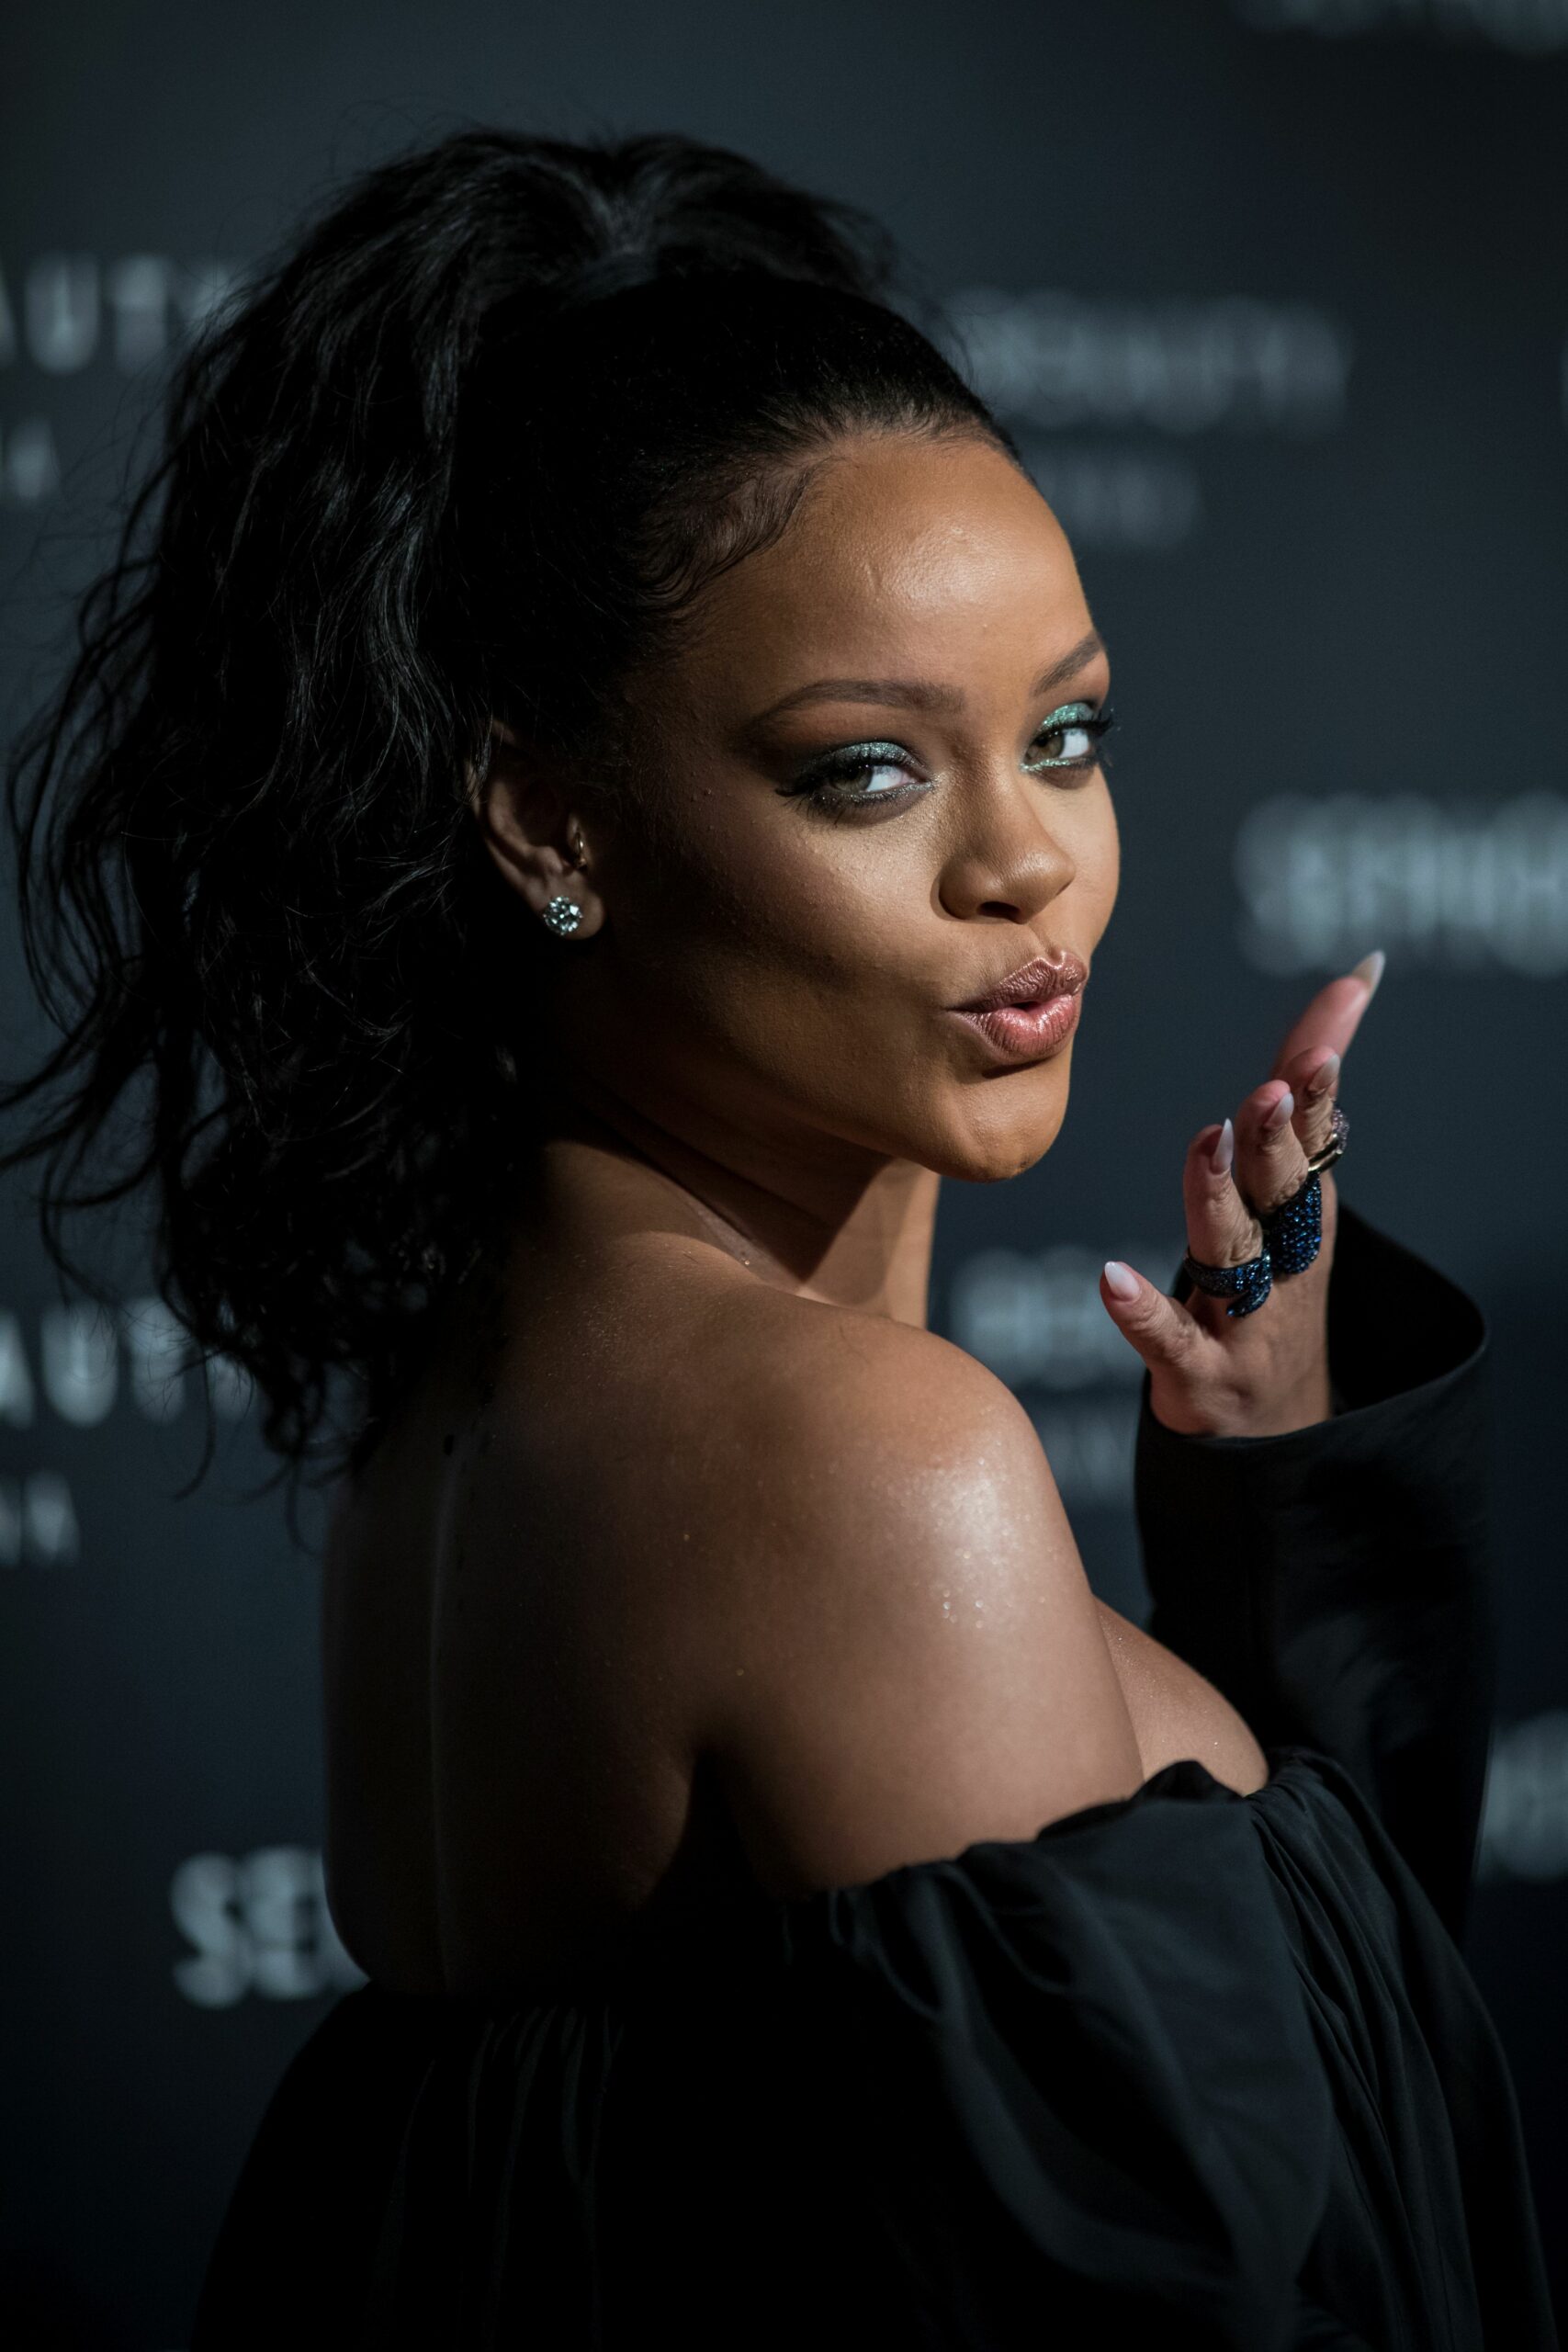 B***h, better have her money! Rihanna e cea mai bogată cântăreață din lume. Ce avere a adunat în conturi?